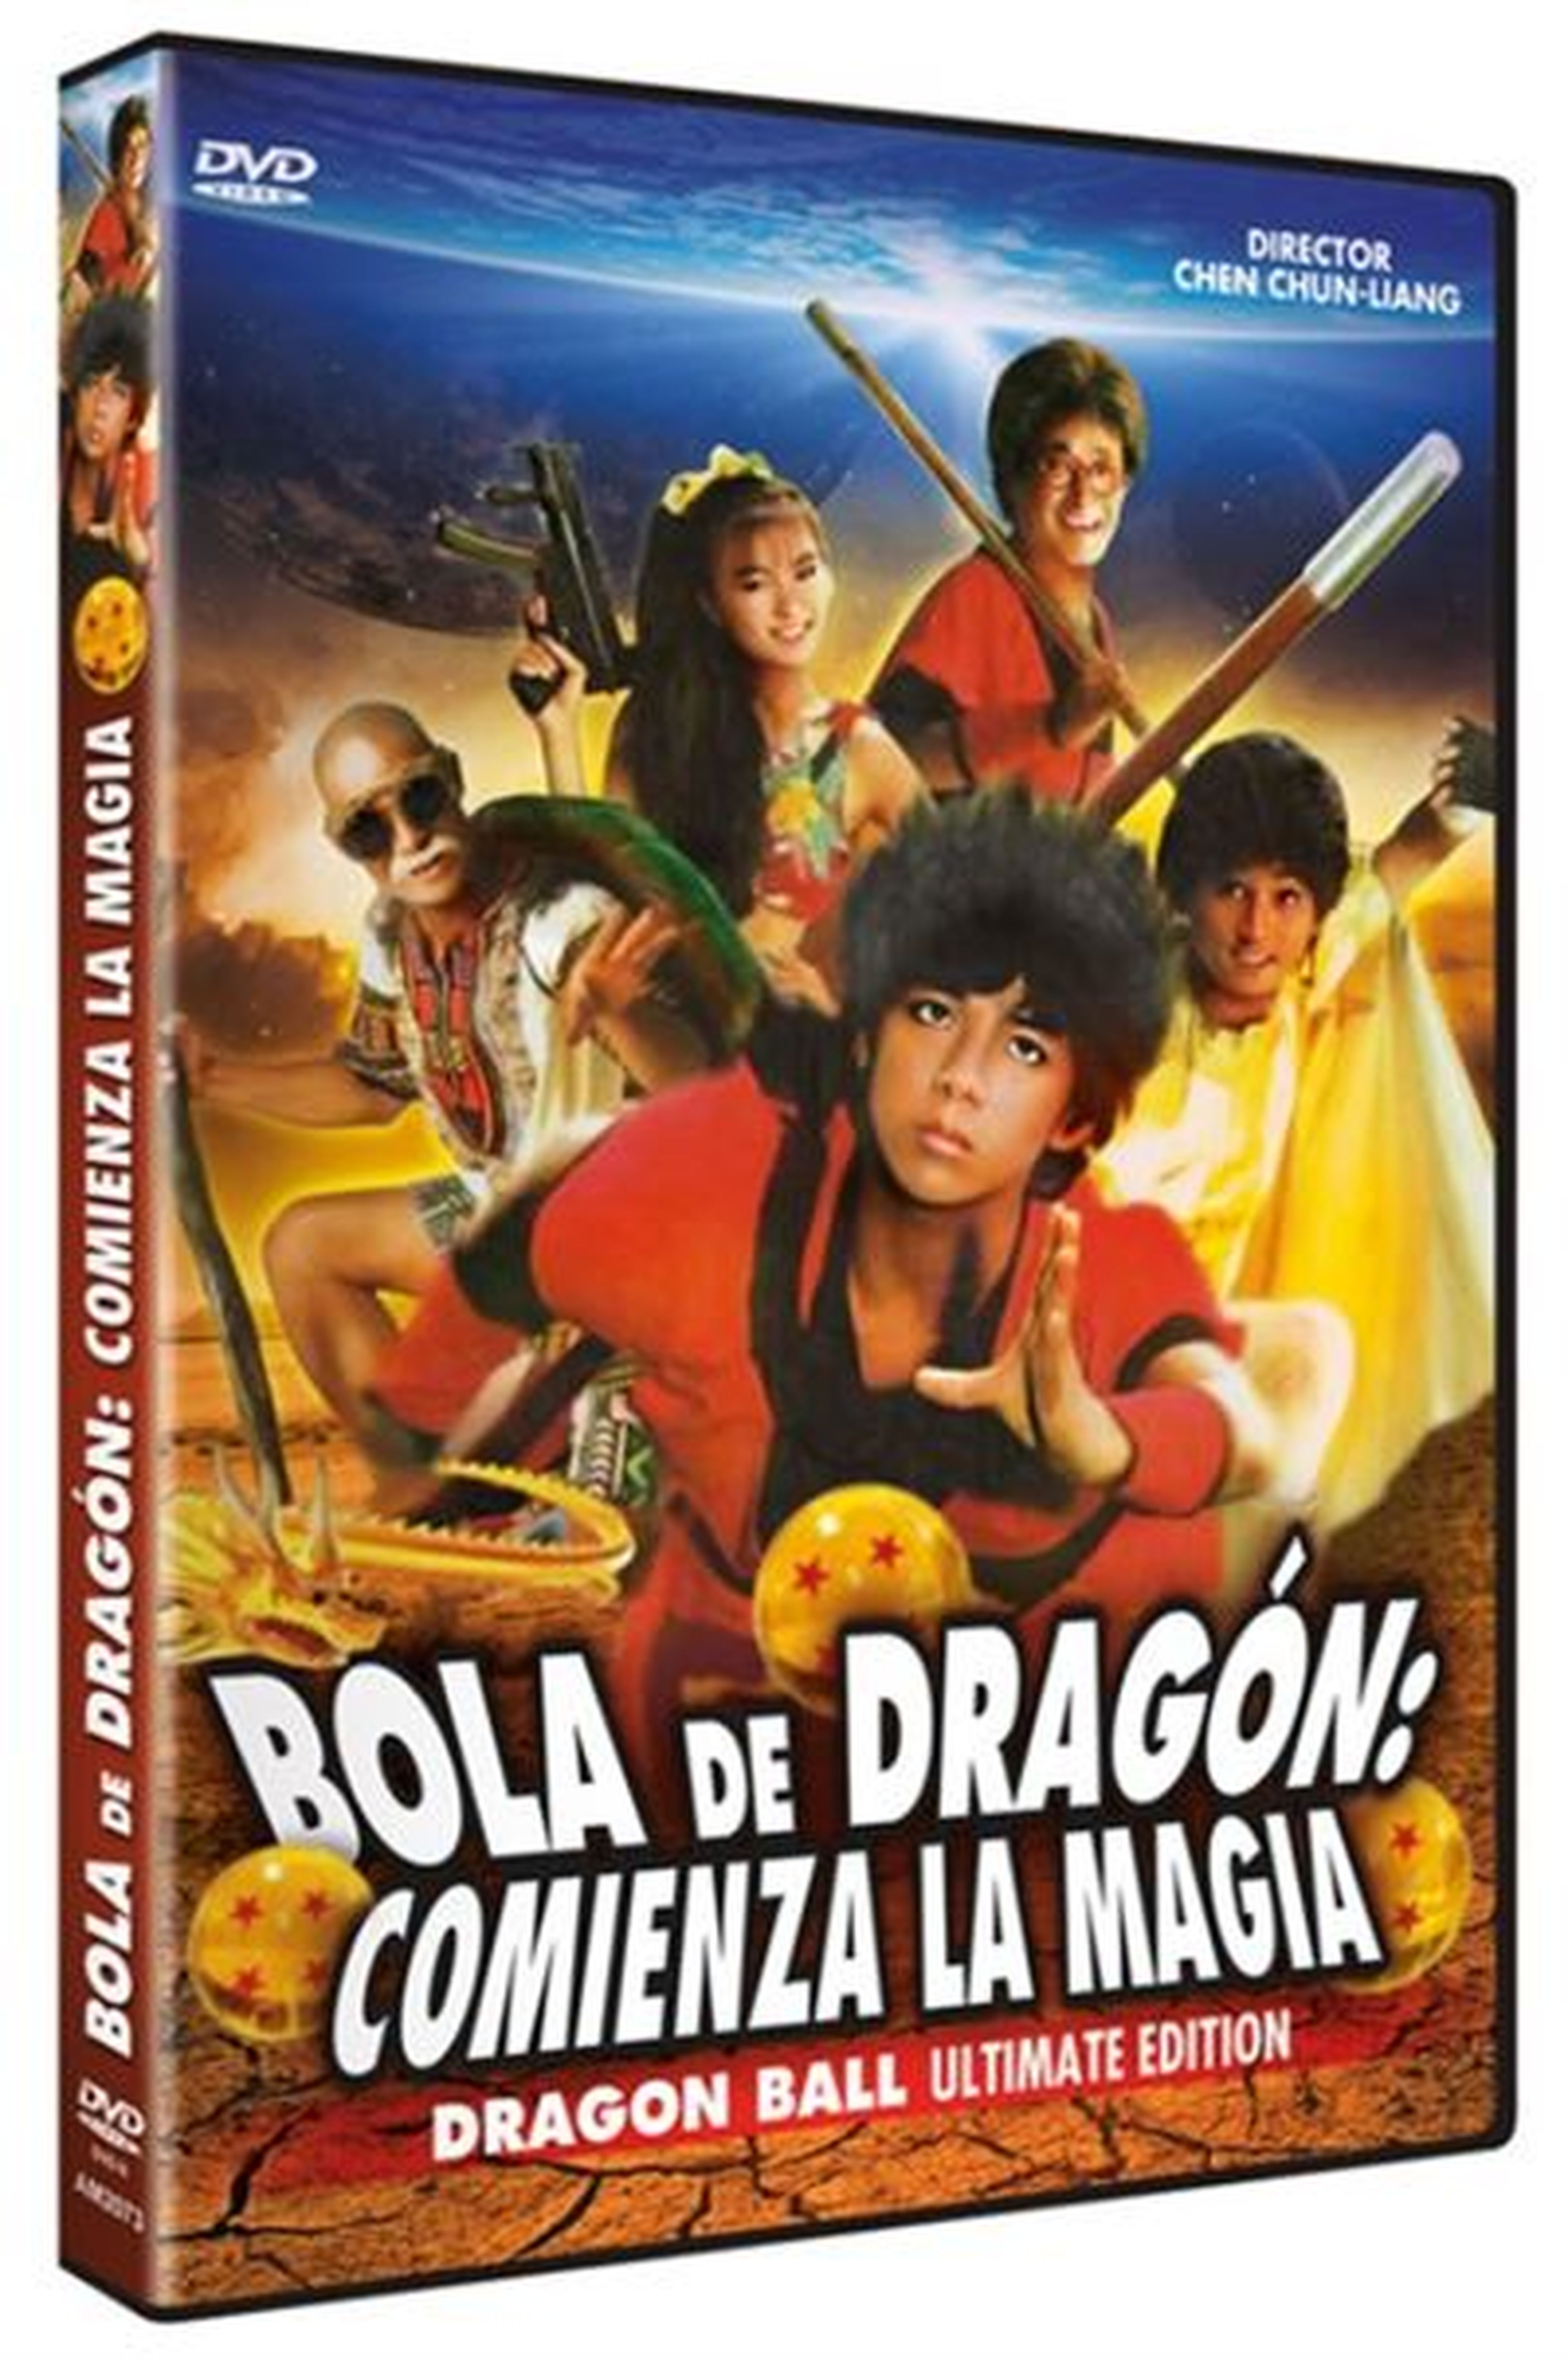 Dragon Ball - Vuelve la magia con el live-action chino en una nueva edición española en DVD